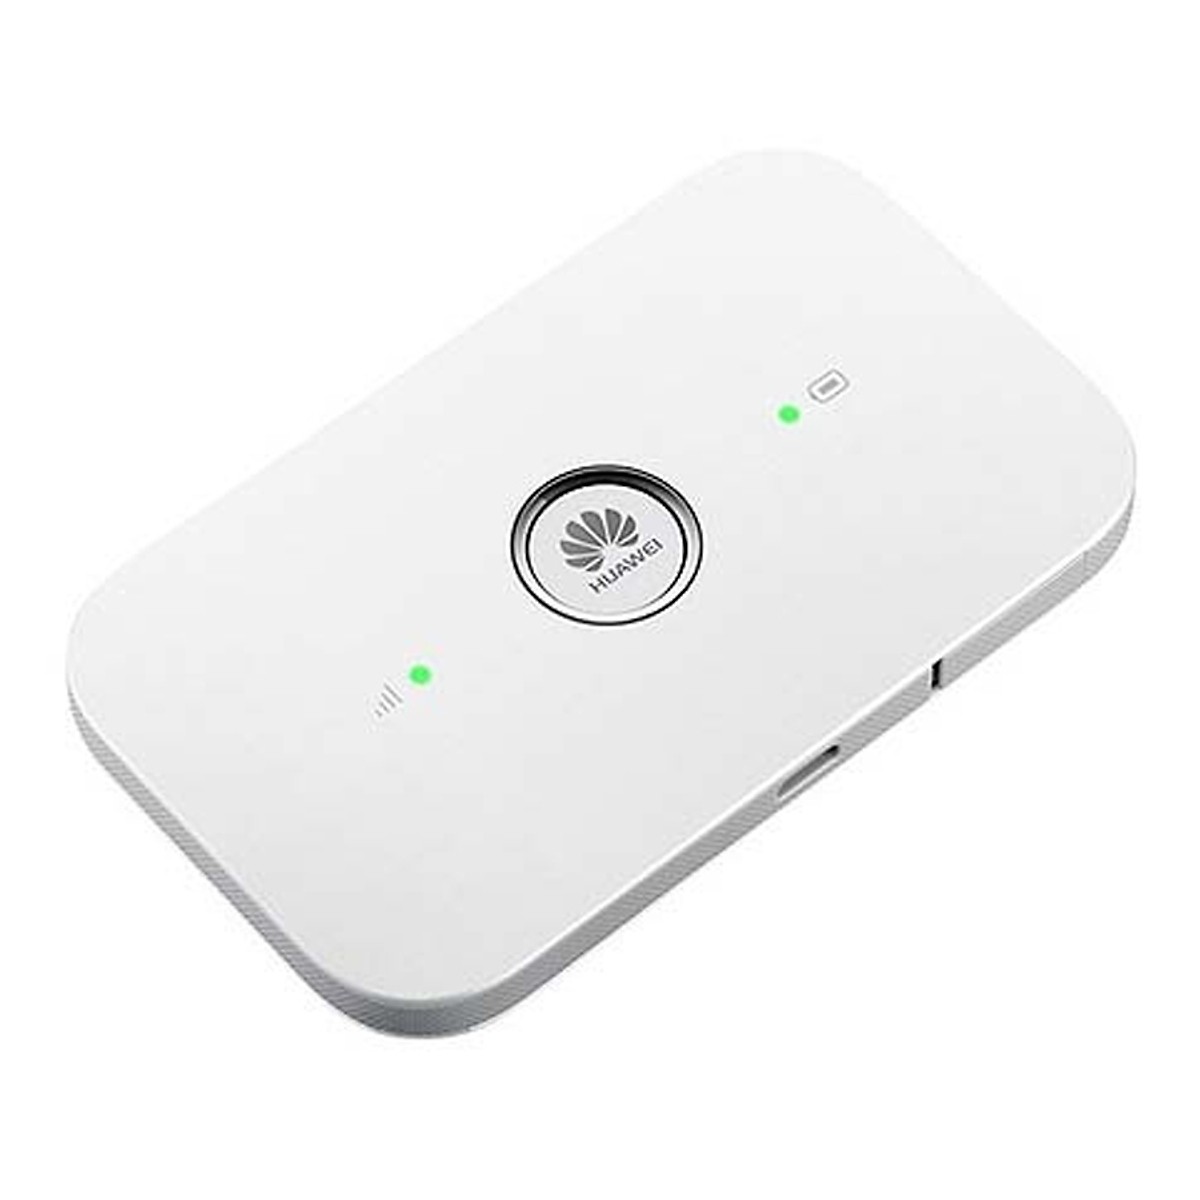 Mua Router wifi 4G Huawei E5573 LTE 150Mbps - Thiết bị phát wifi từ sim 4G - Hàng chính hãng Hôm Nay